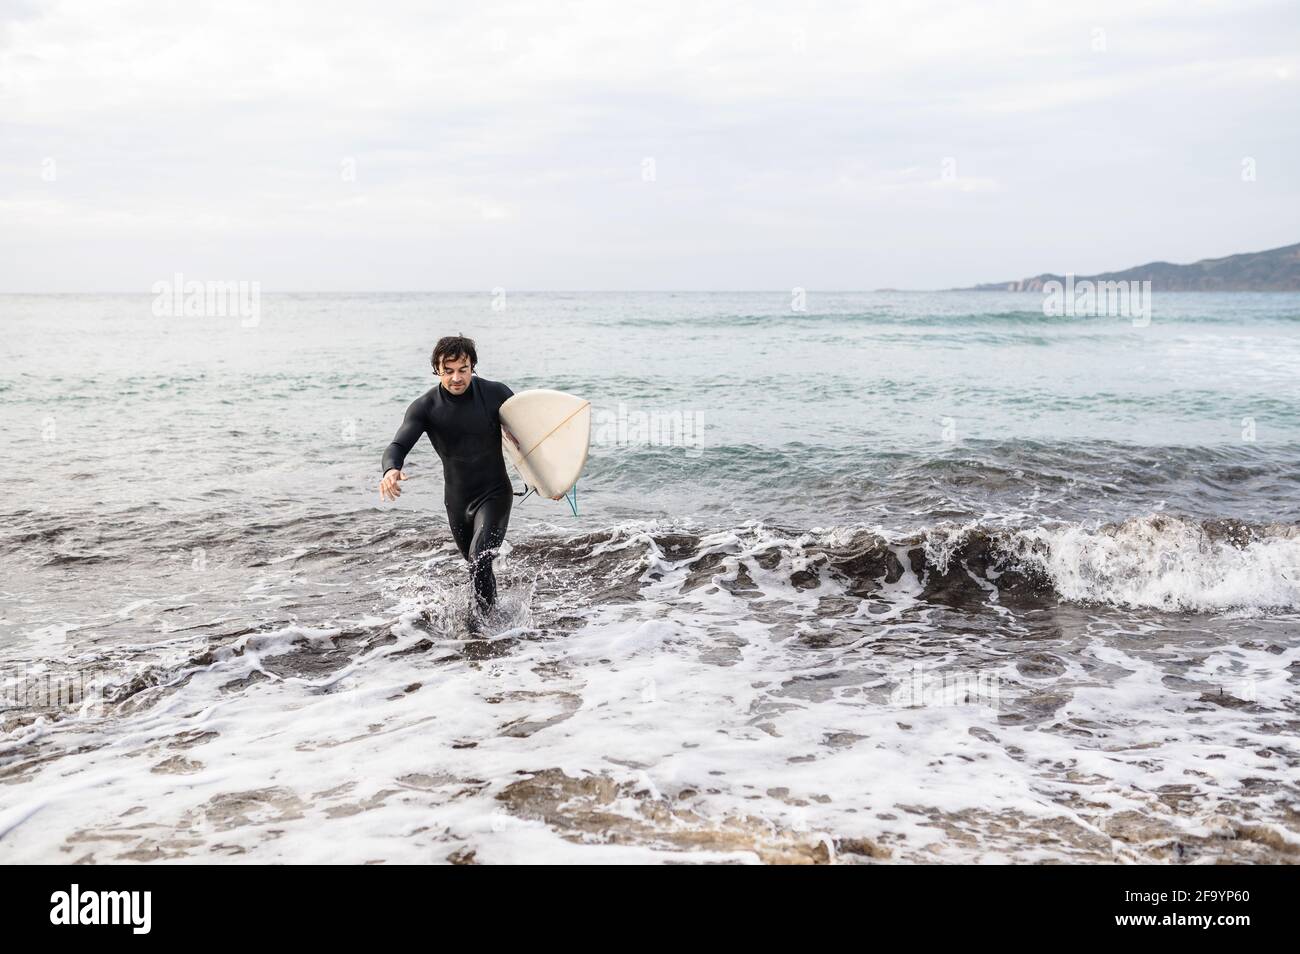 Ritratto dell'uomo surfista che porta con sé una tavola da surf e indossa un costume da immersione che si allontana dall'acqua dopo il surf. Foto Stock